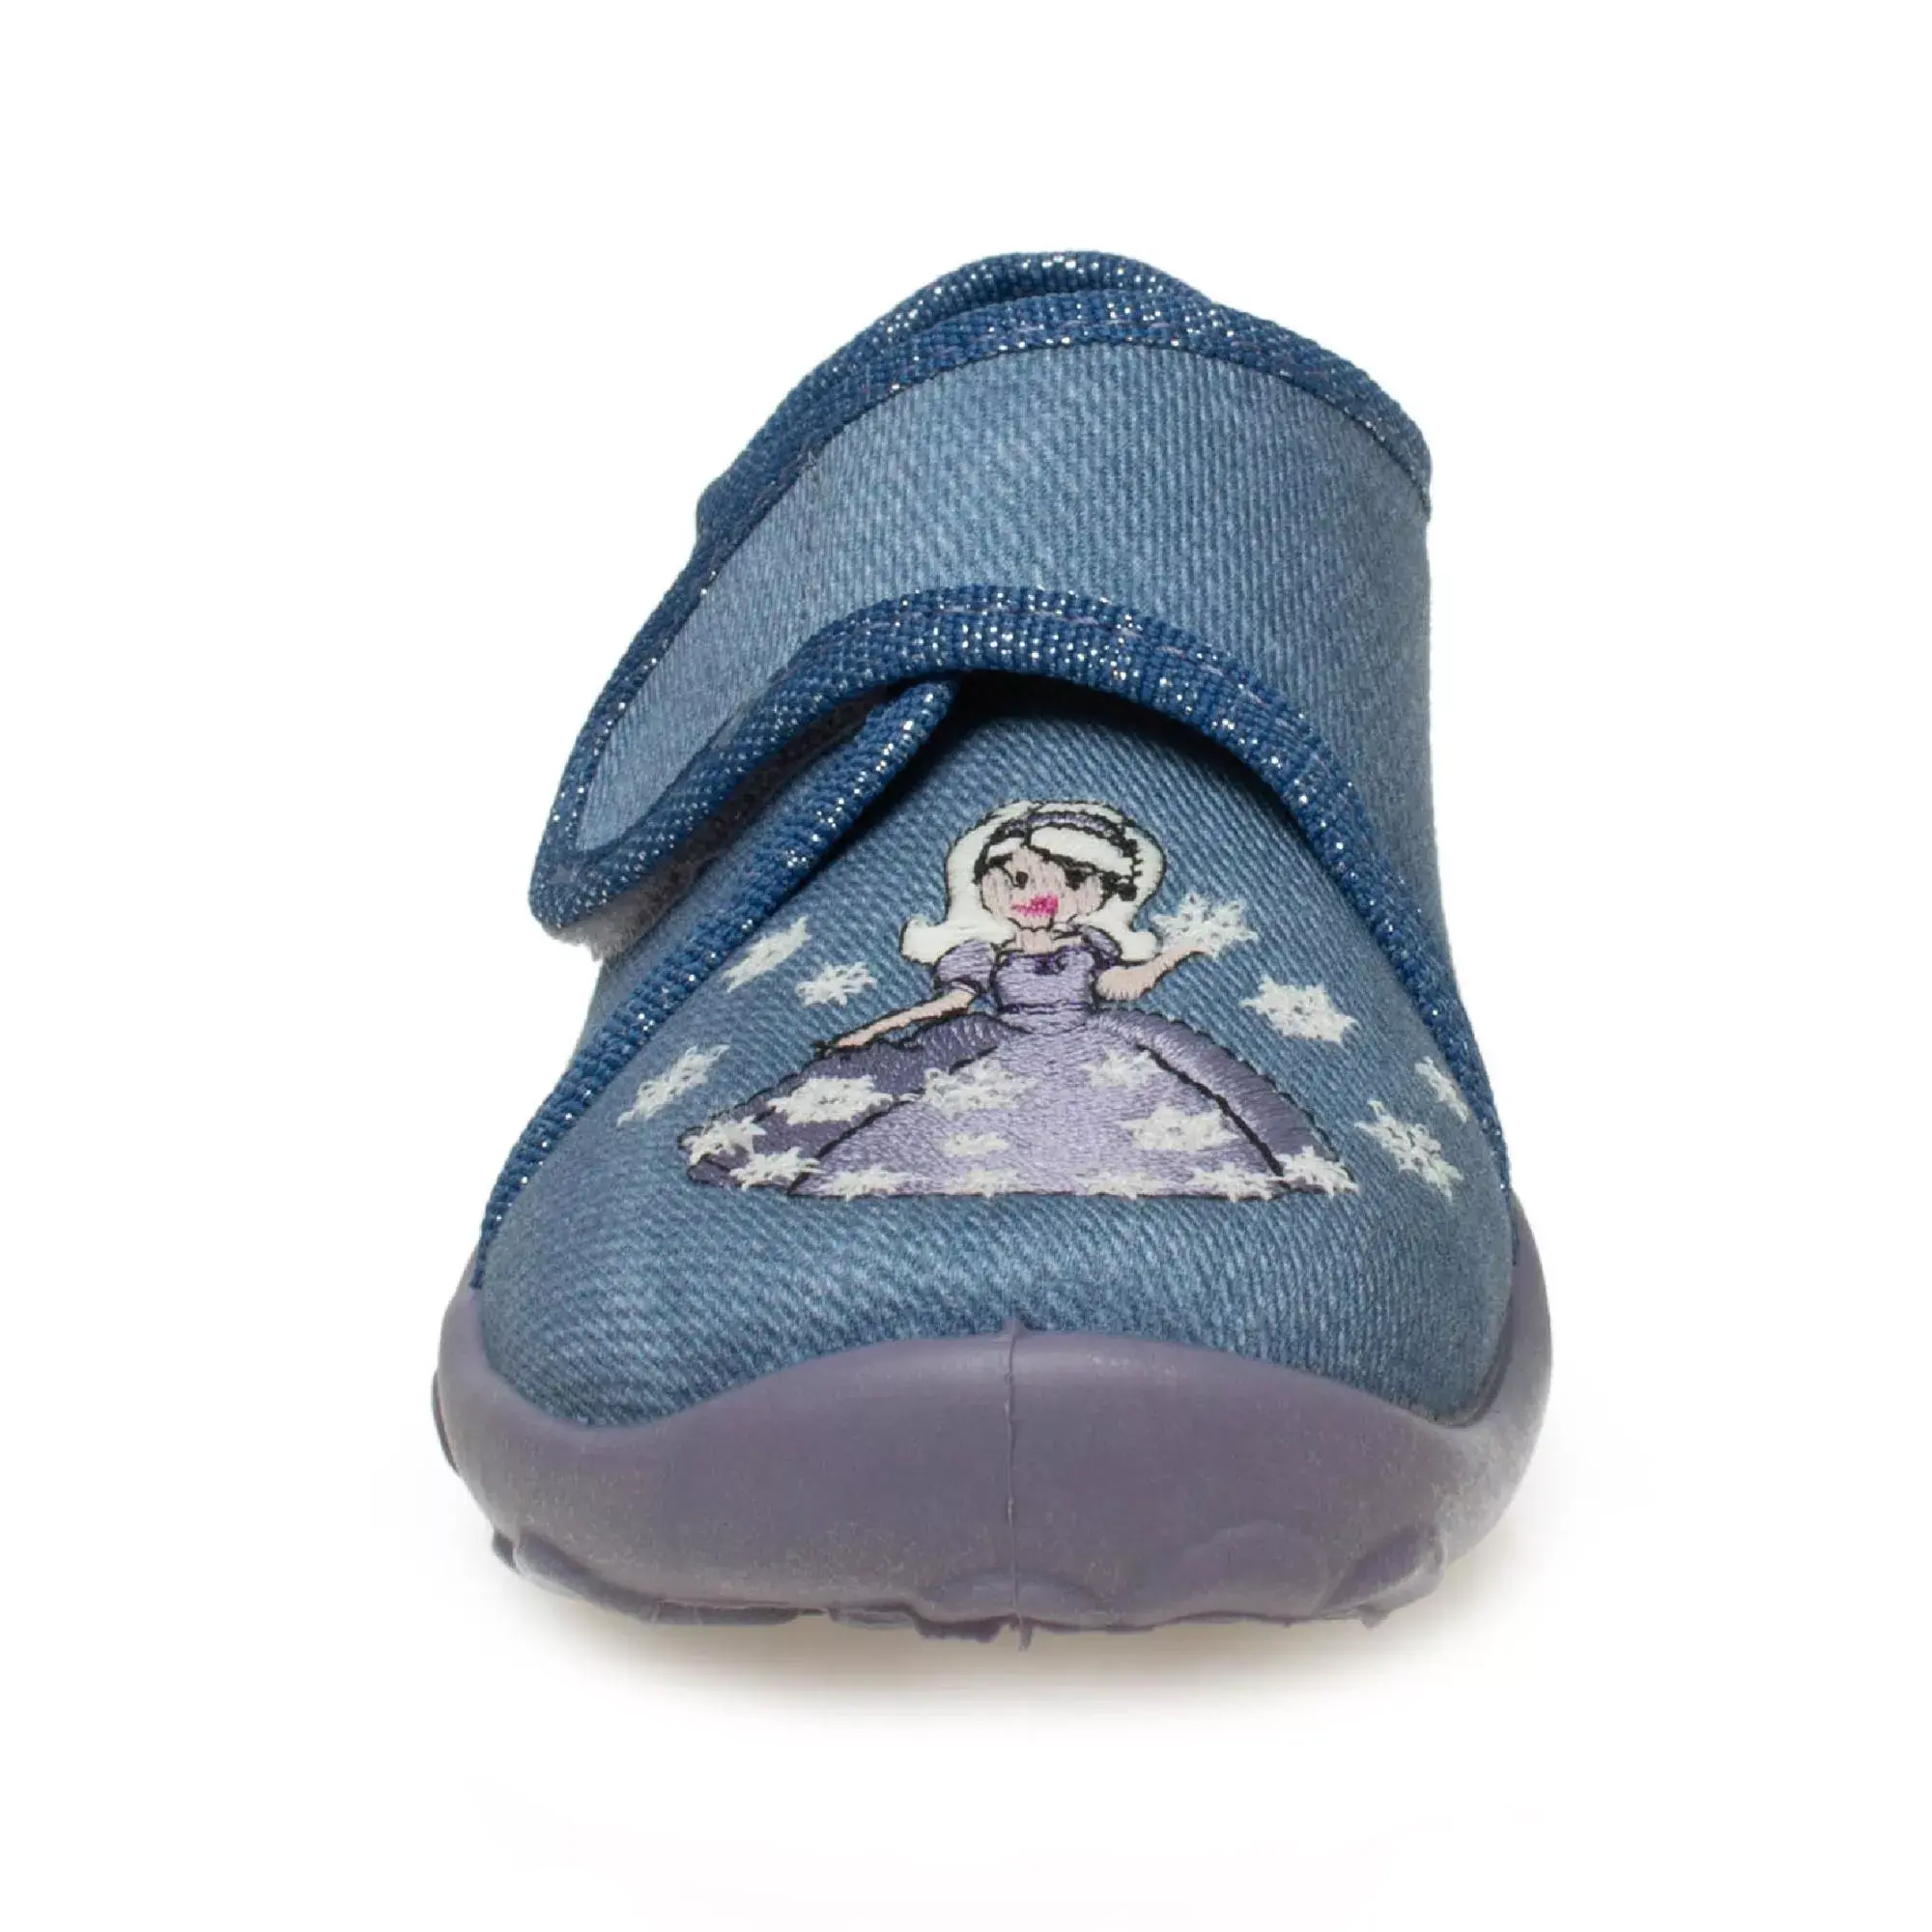 Superfit 000258 Bonny Ev Mavi Kız Çocuk Ayakkabı - 3